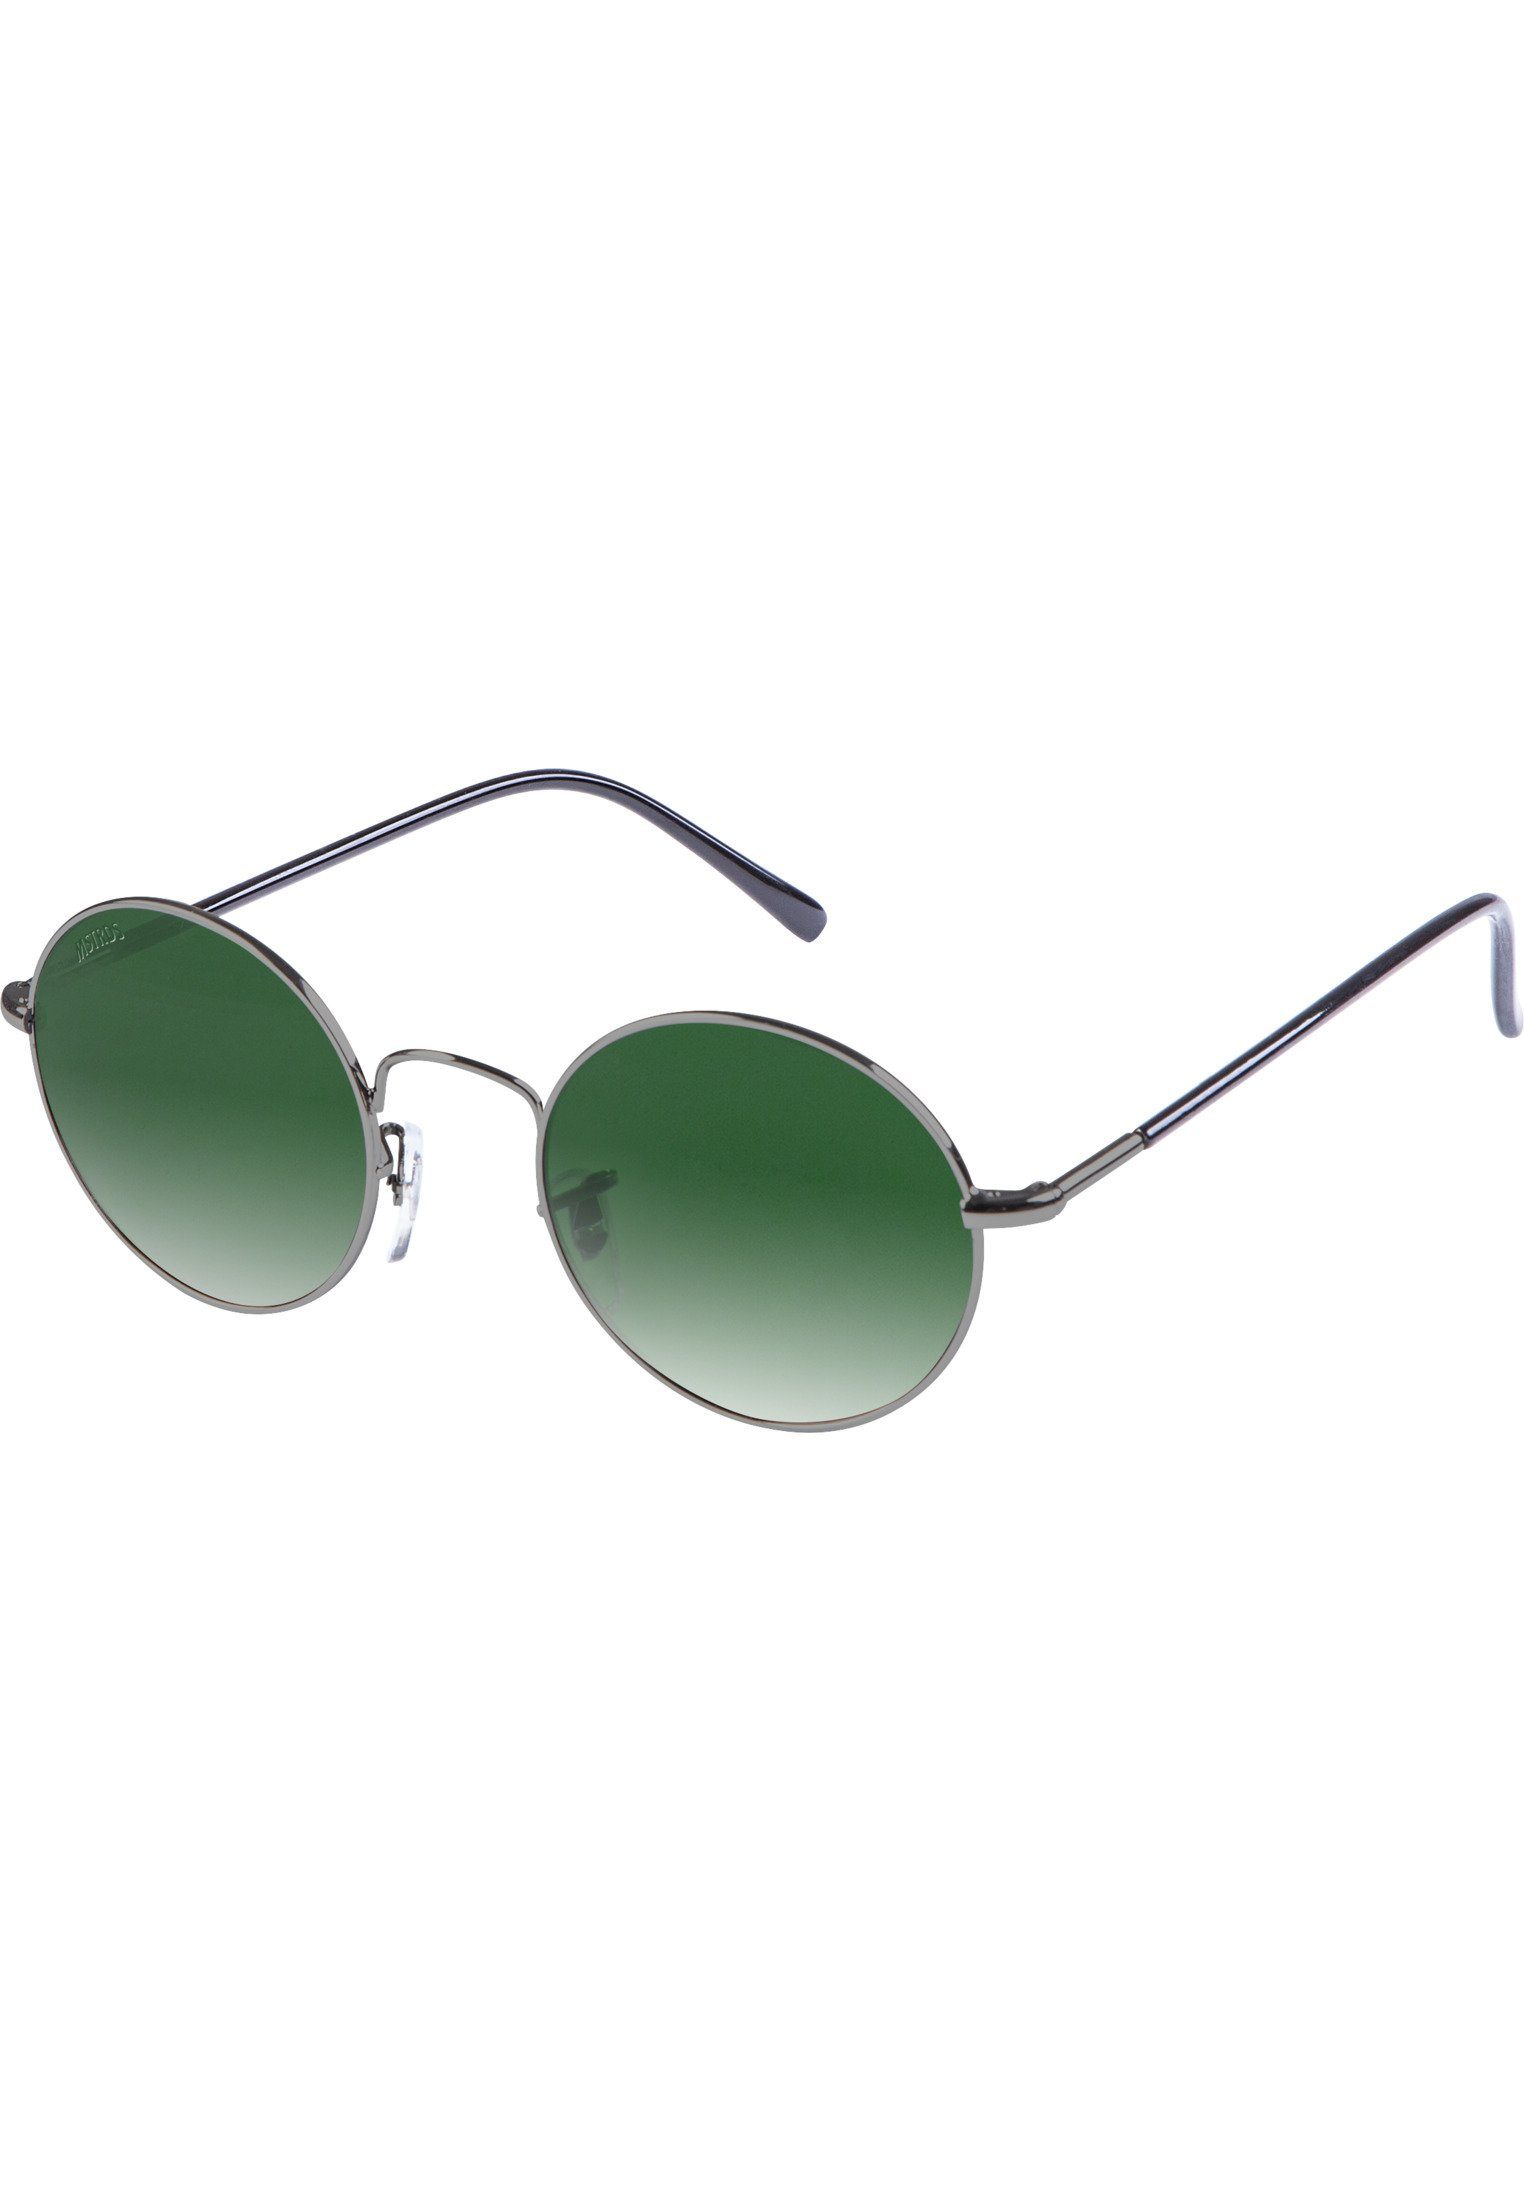 Sonnenbrille Flower Sunglasses MSTRDS Accessoires